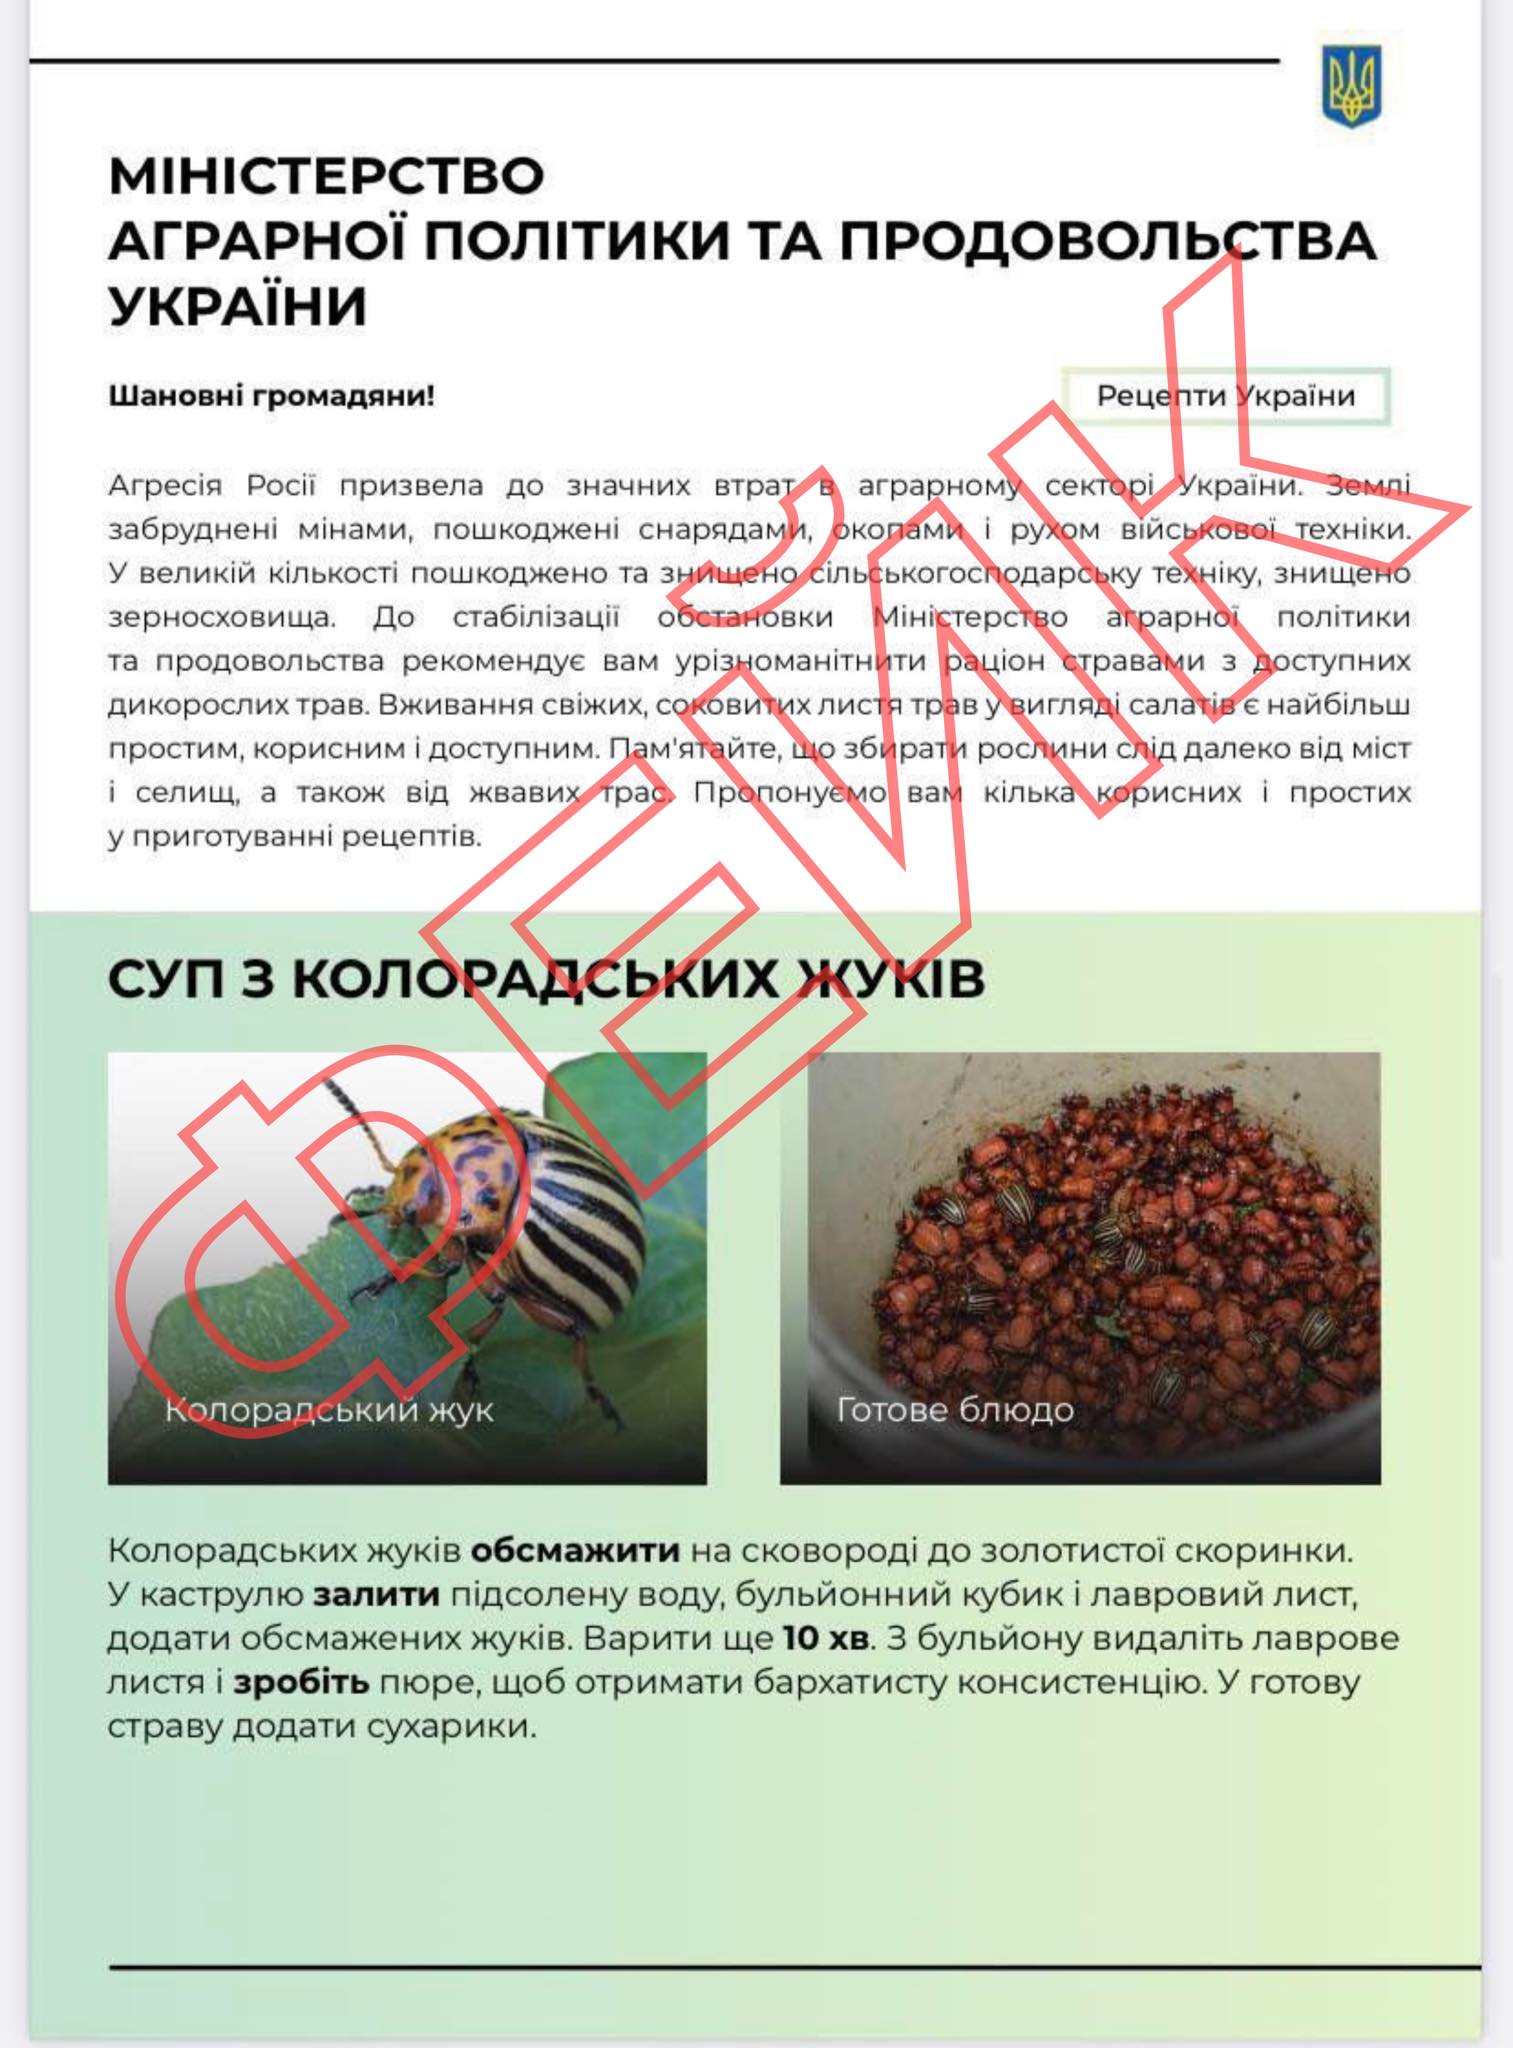 Очередная глупость от недостроя: в России распространяют фейки о голоде в Украине